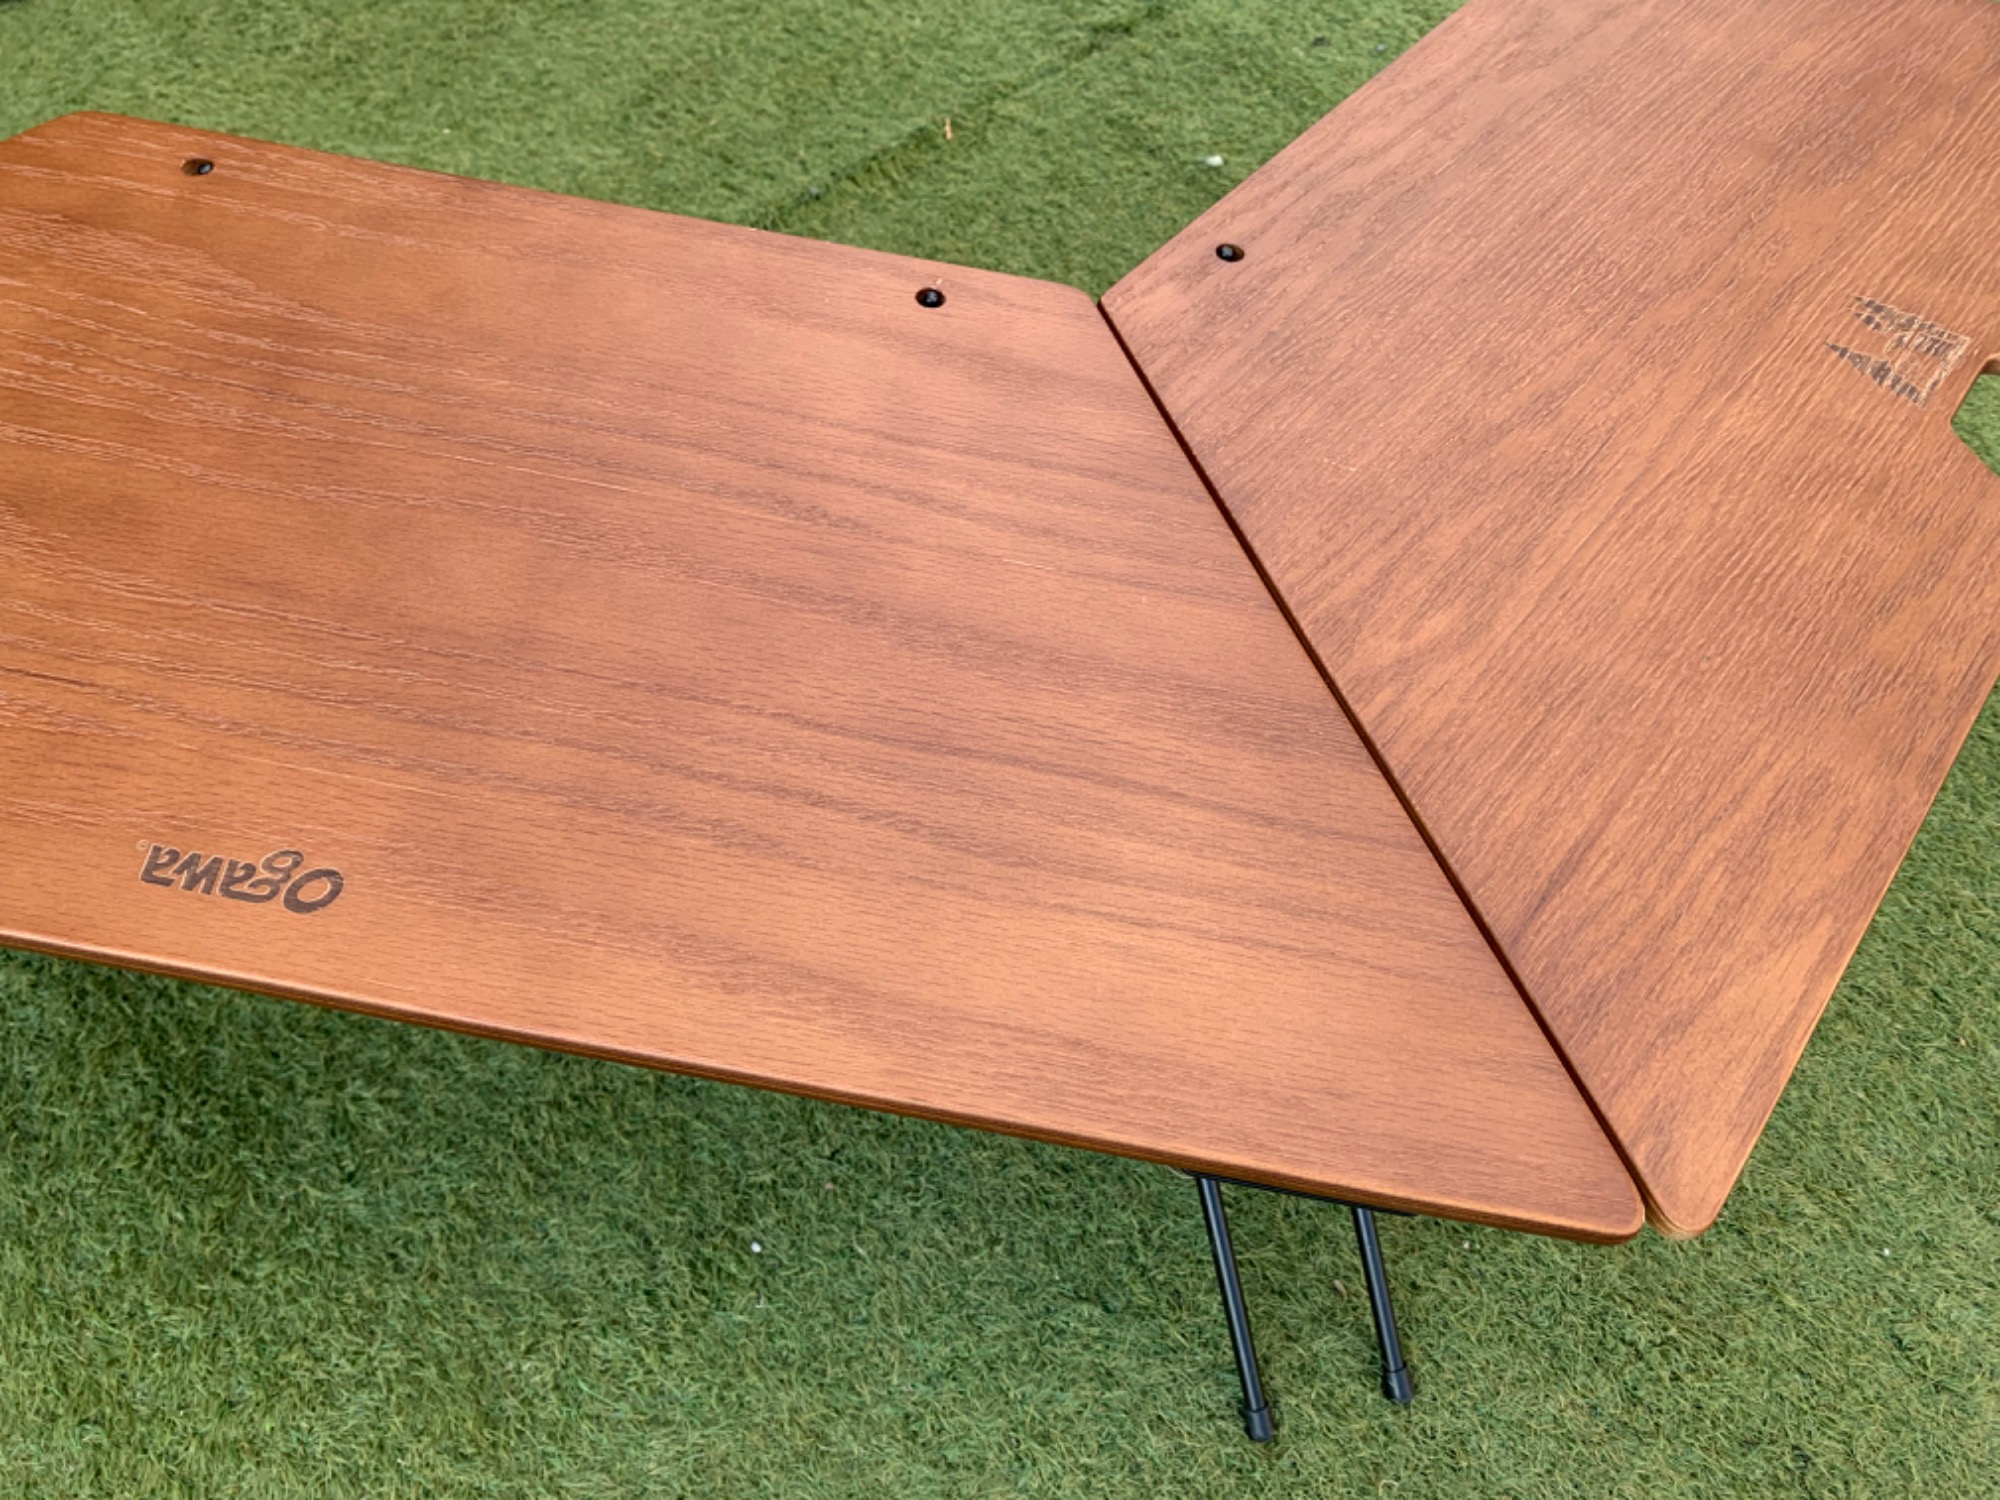 変形可能なテーブル！オガワのアーチテーブルはワンポールテントに最適 